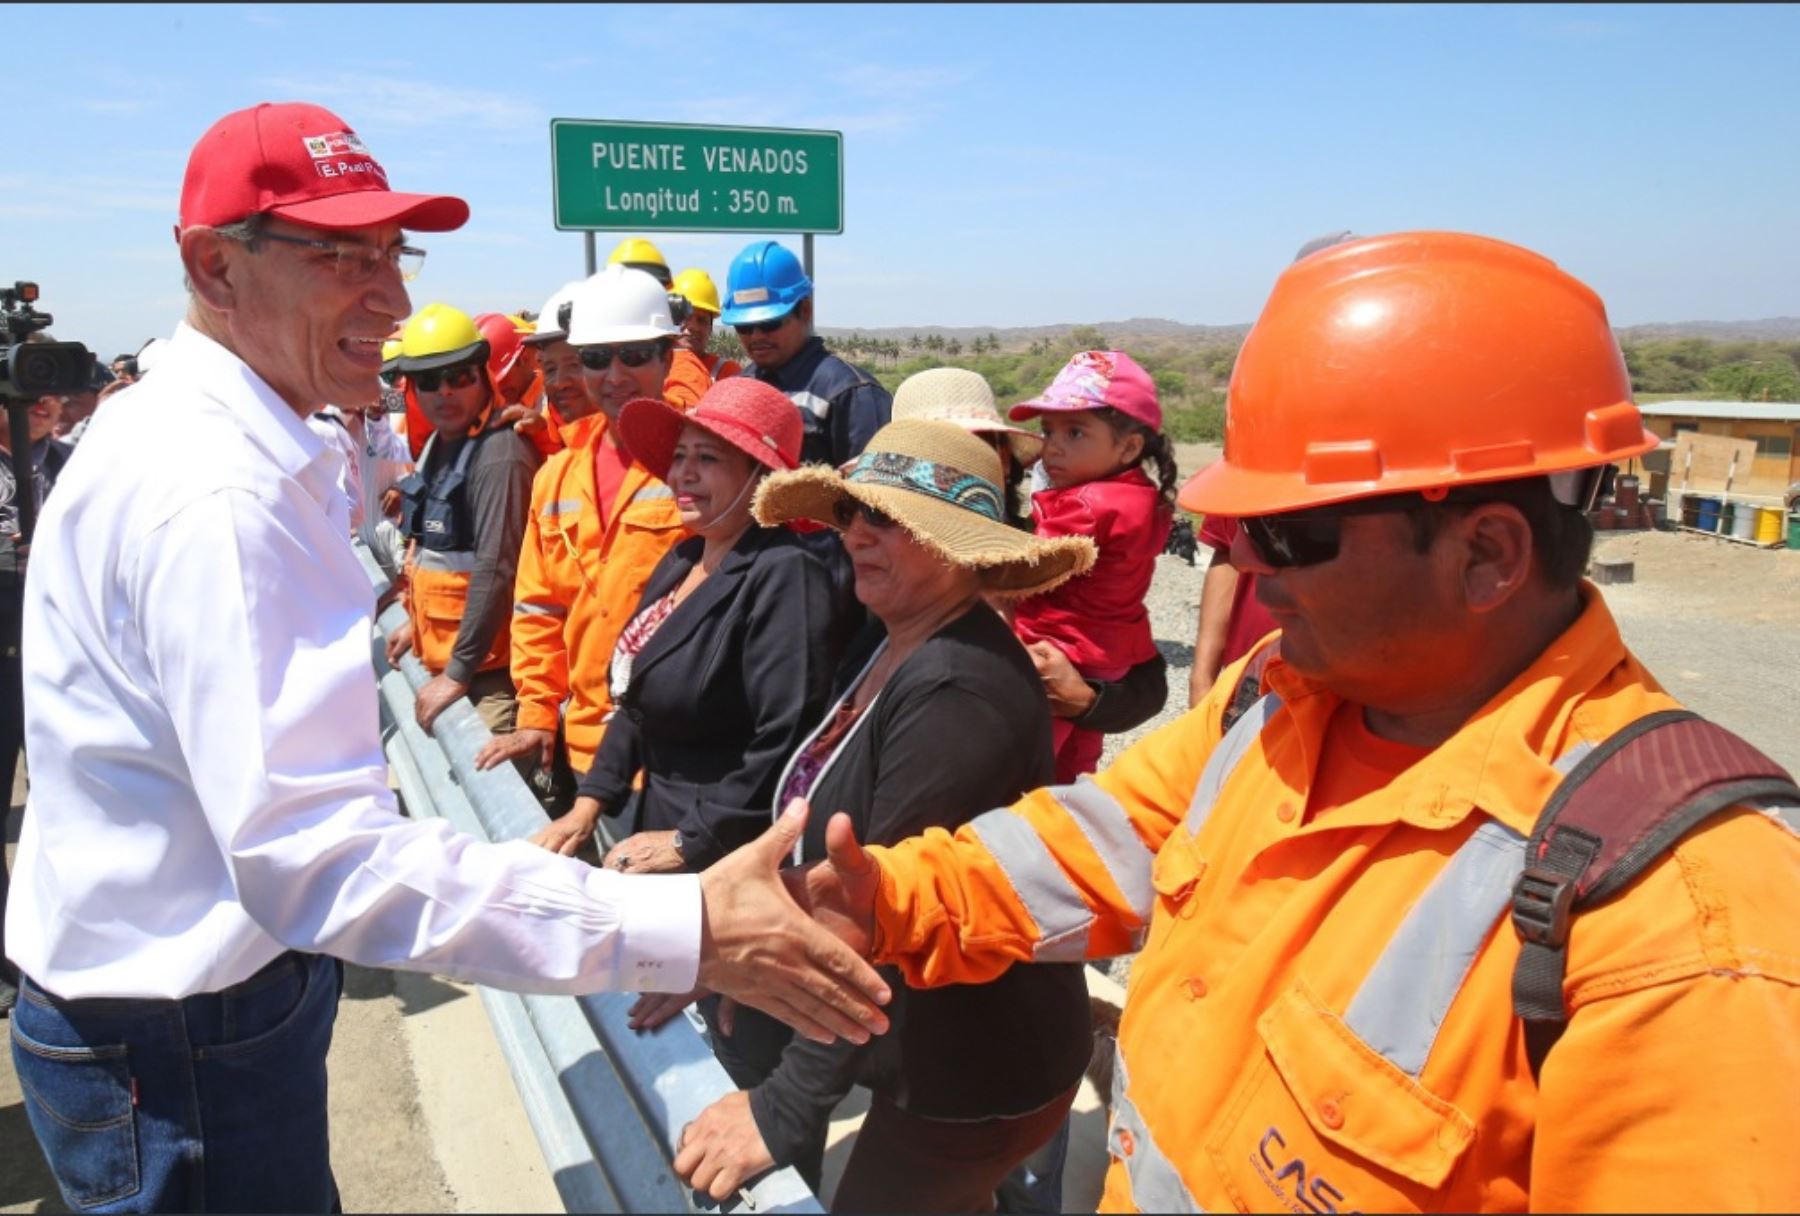 Presidente Martín Vizcarra entrega puente Venados en la región Tacna.